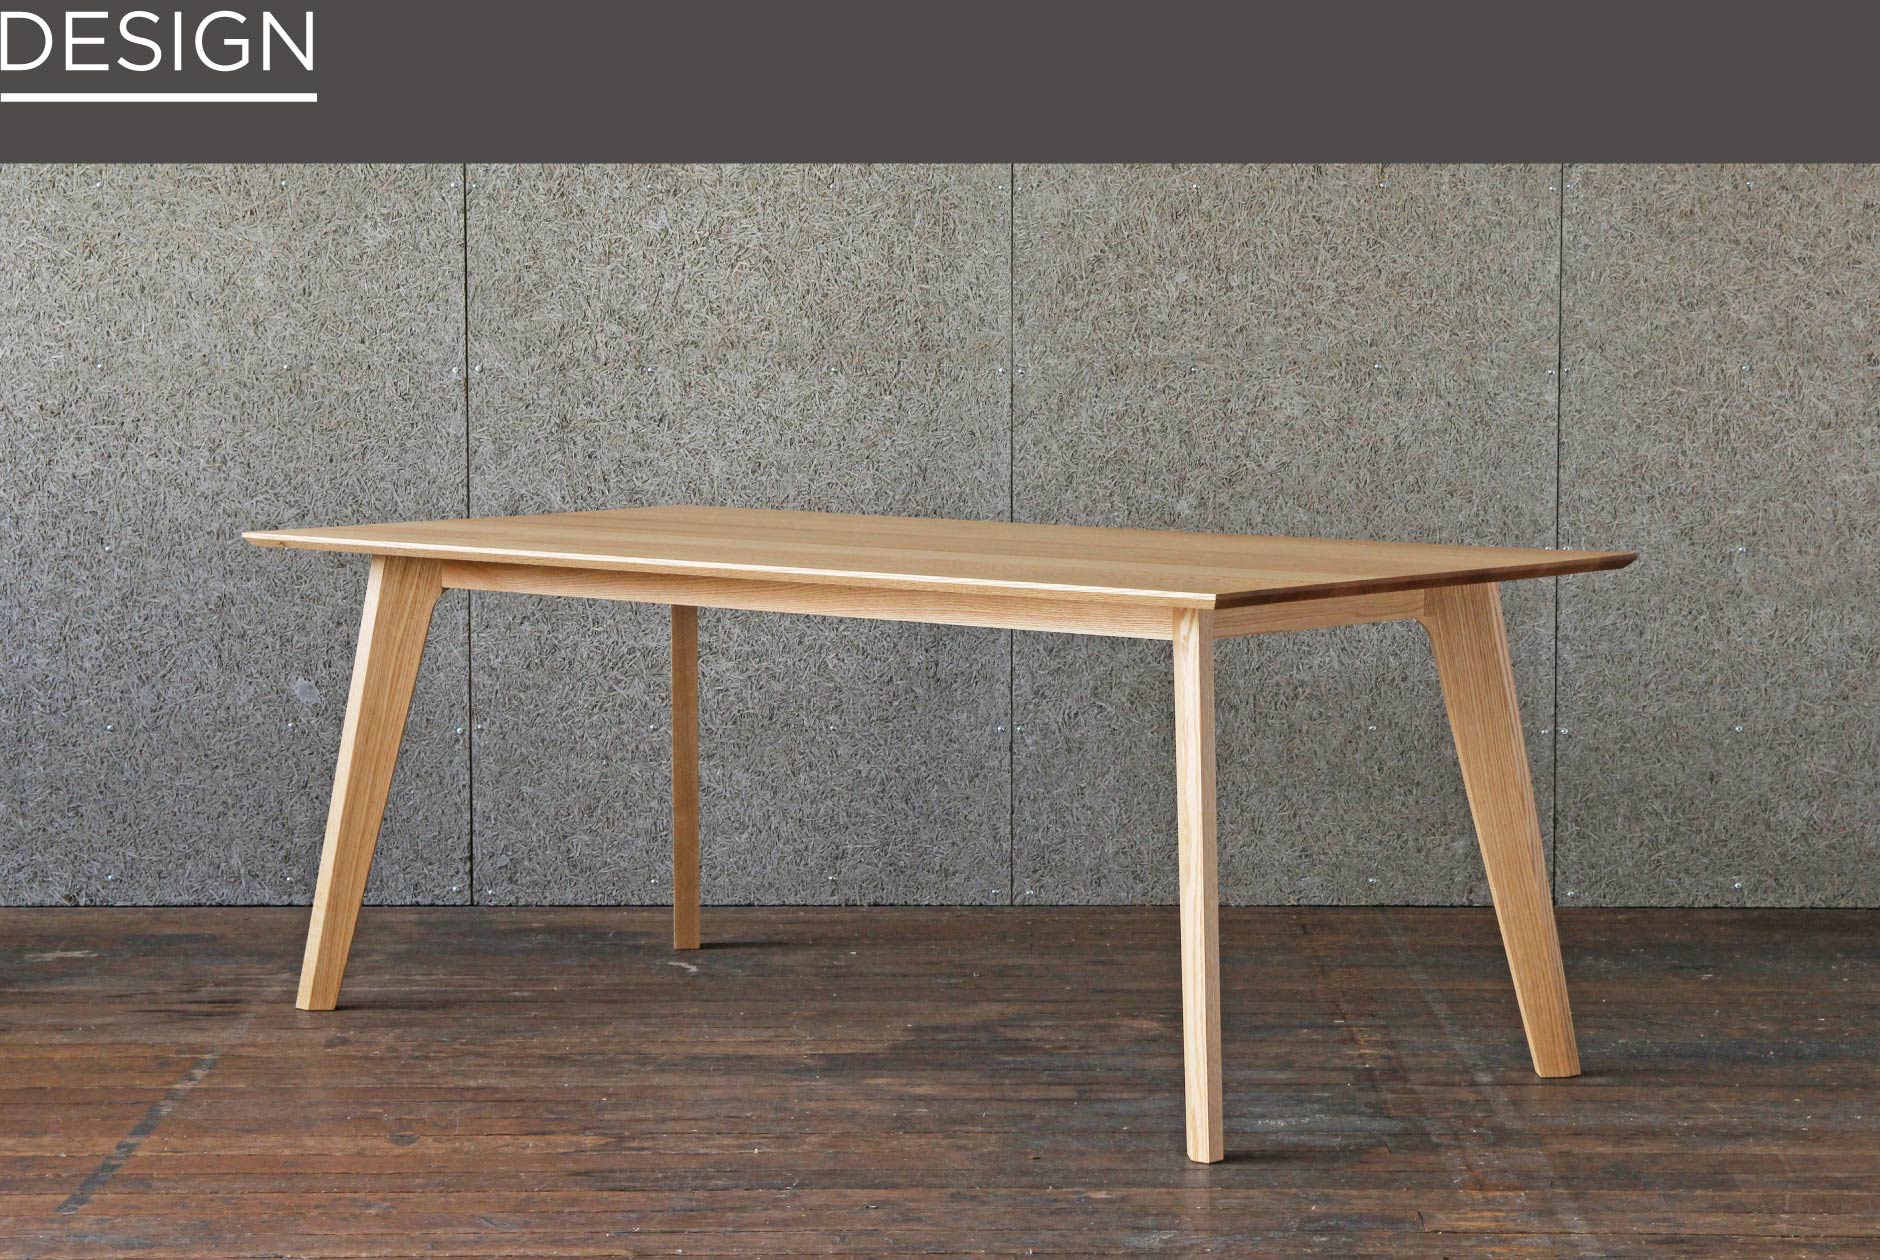 横浜店の家具の中でもシンプルでスッキリとしたデザインが特徴のダイニングテーブル。